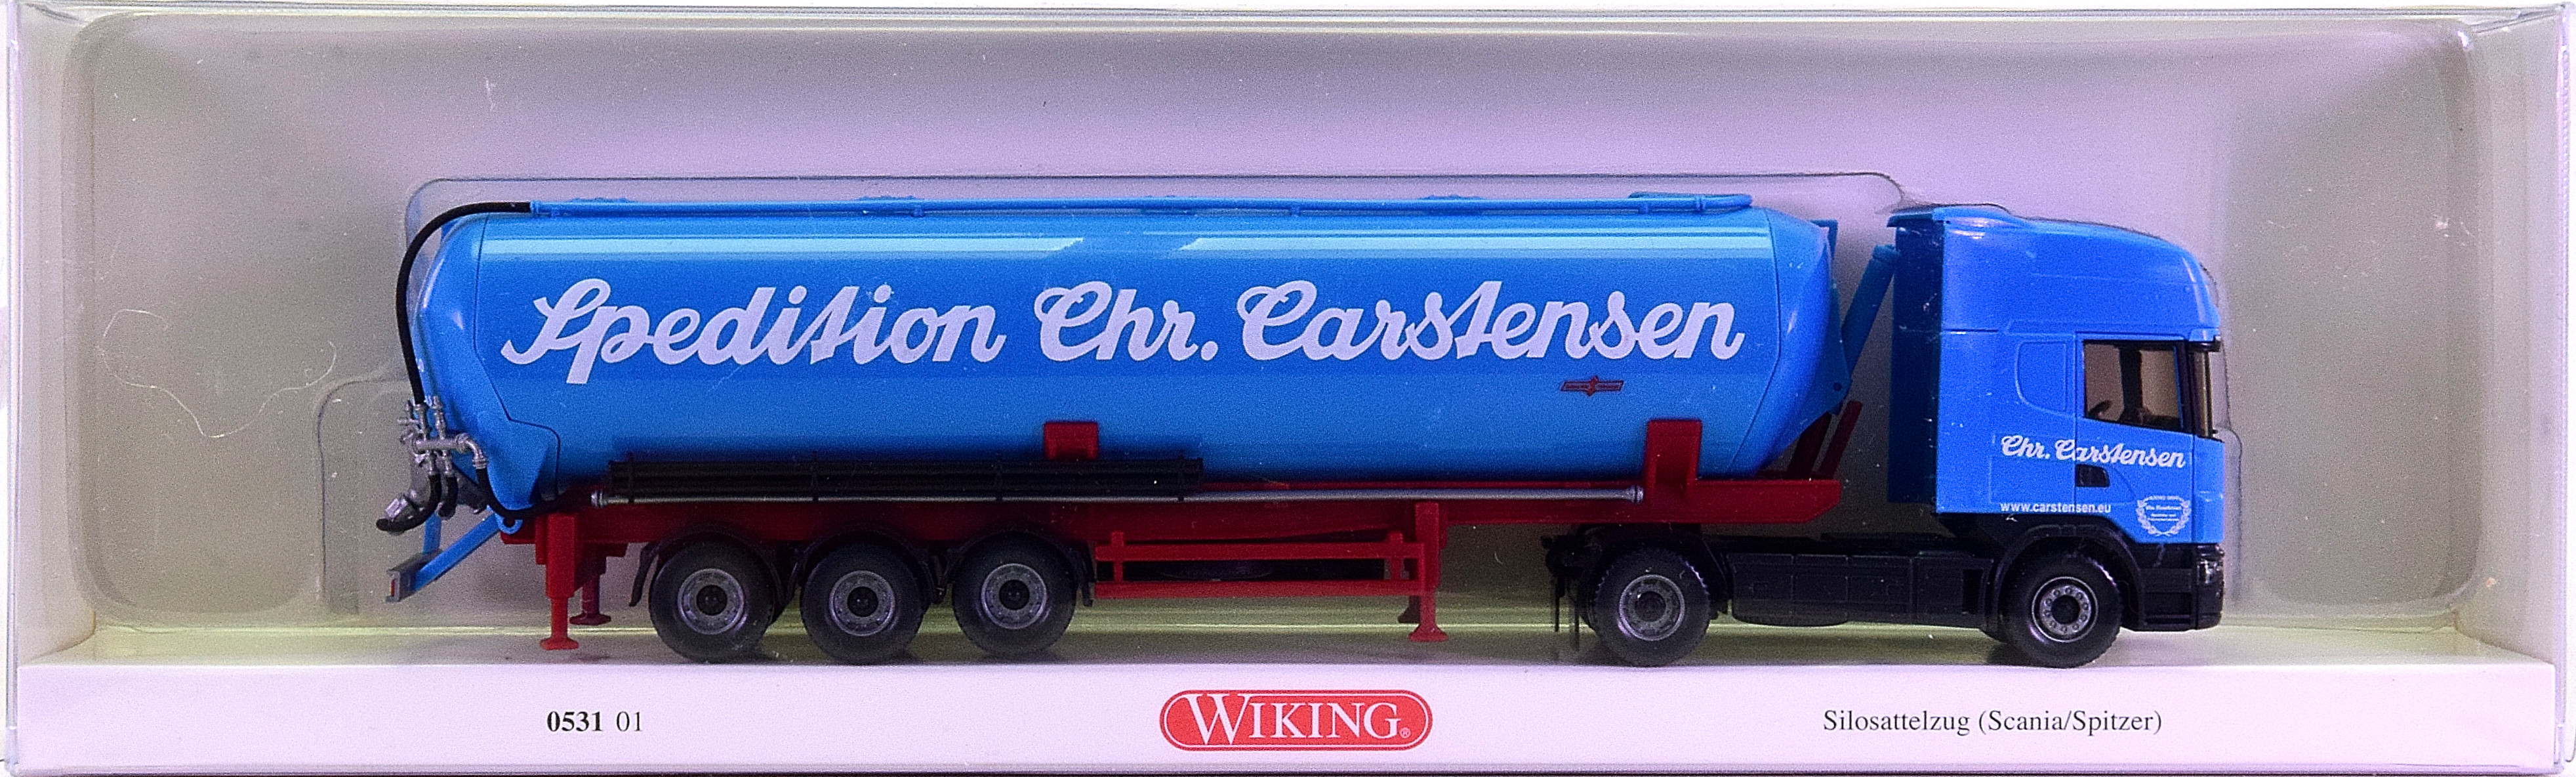 Wiking 0531 01 (1:87) – Scania Spitzer Silosattelzug -Spedition Carstensen-